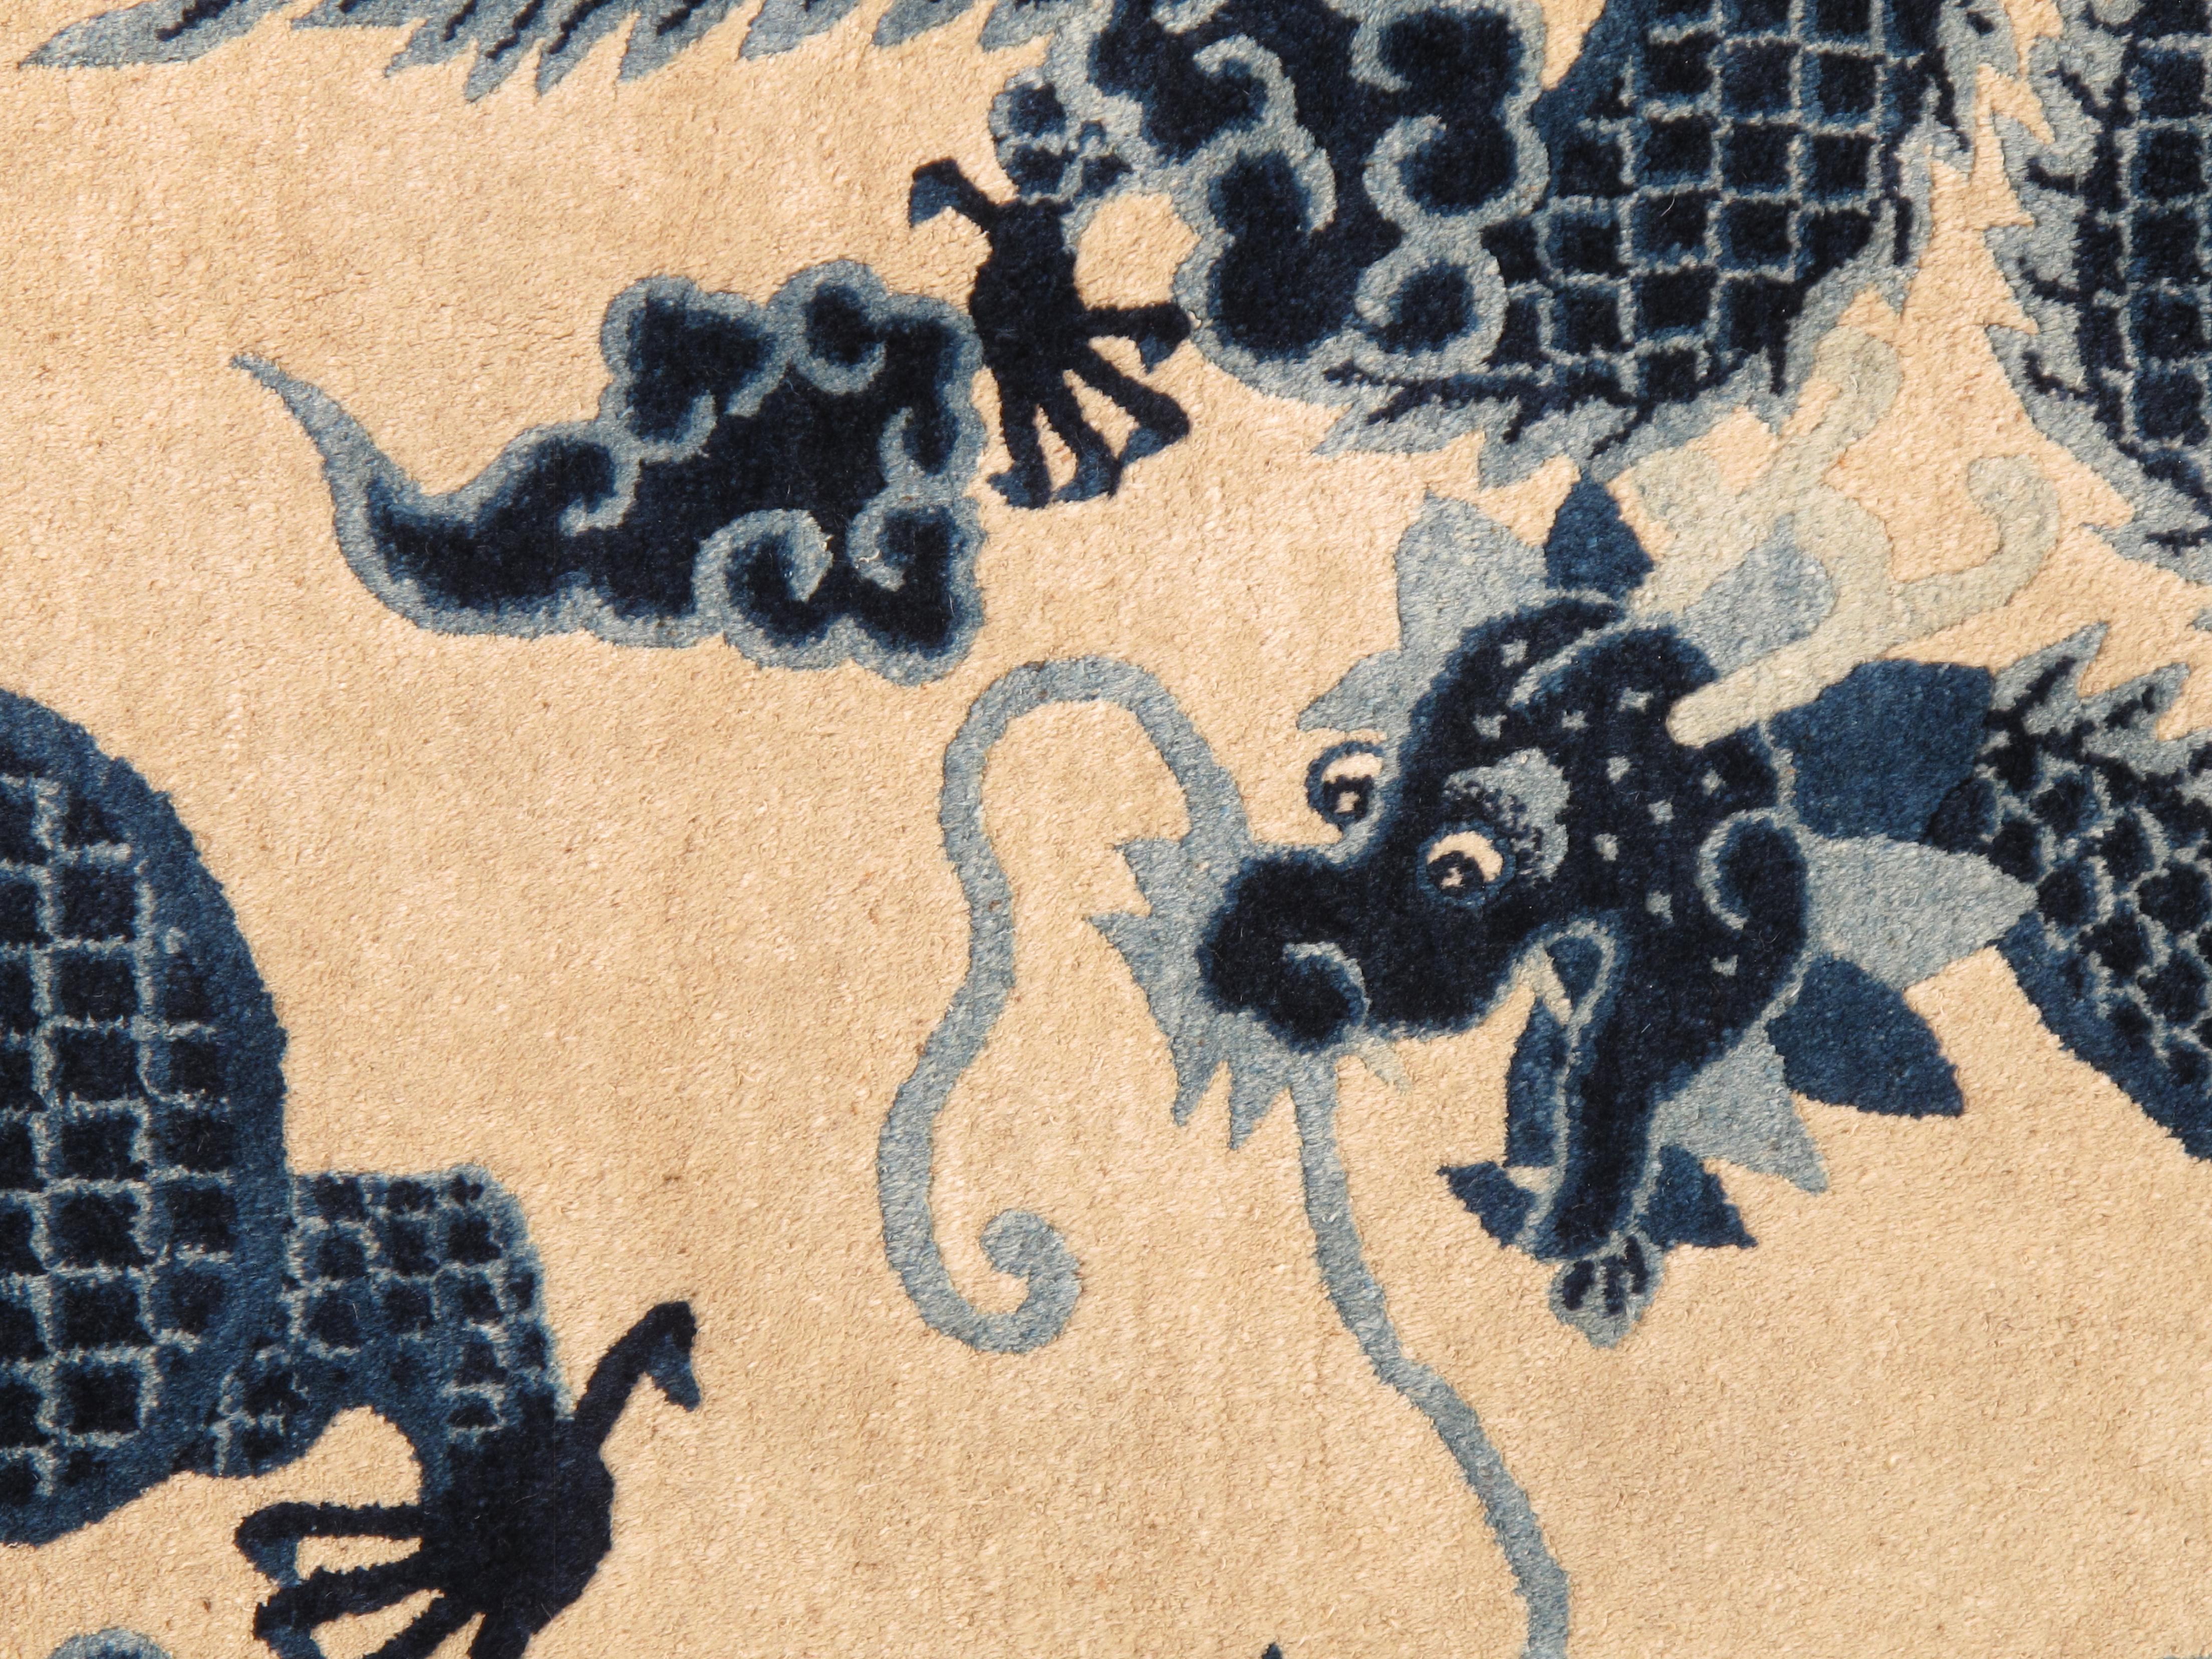 Die Geschichte der antiken chinesischen Teppiche aus Peking, die mit fünf Drachen verziert sind, ist eine fesselnde Reise, die die Bereiche Kunst, Kultur und Tradition miteinander verknüpft.

Diese Teppiche stammen aus den kaiserlichen Werkstätten